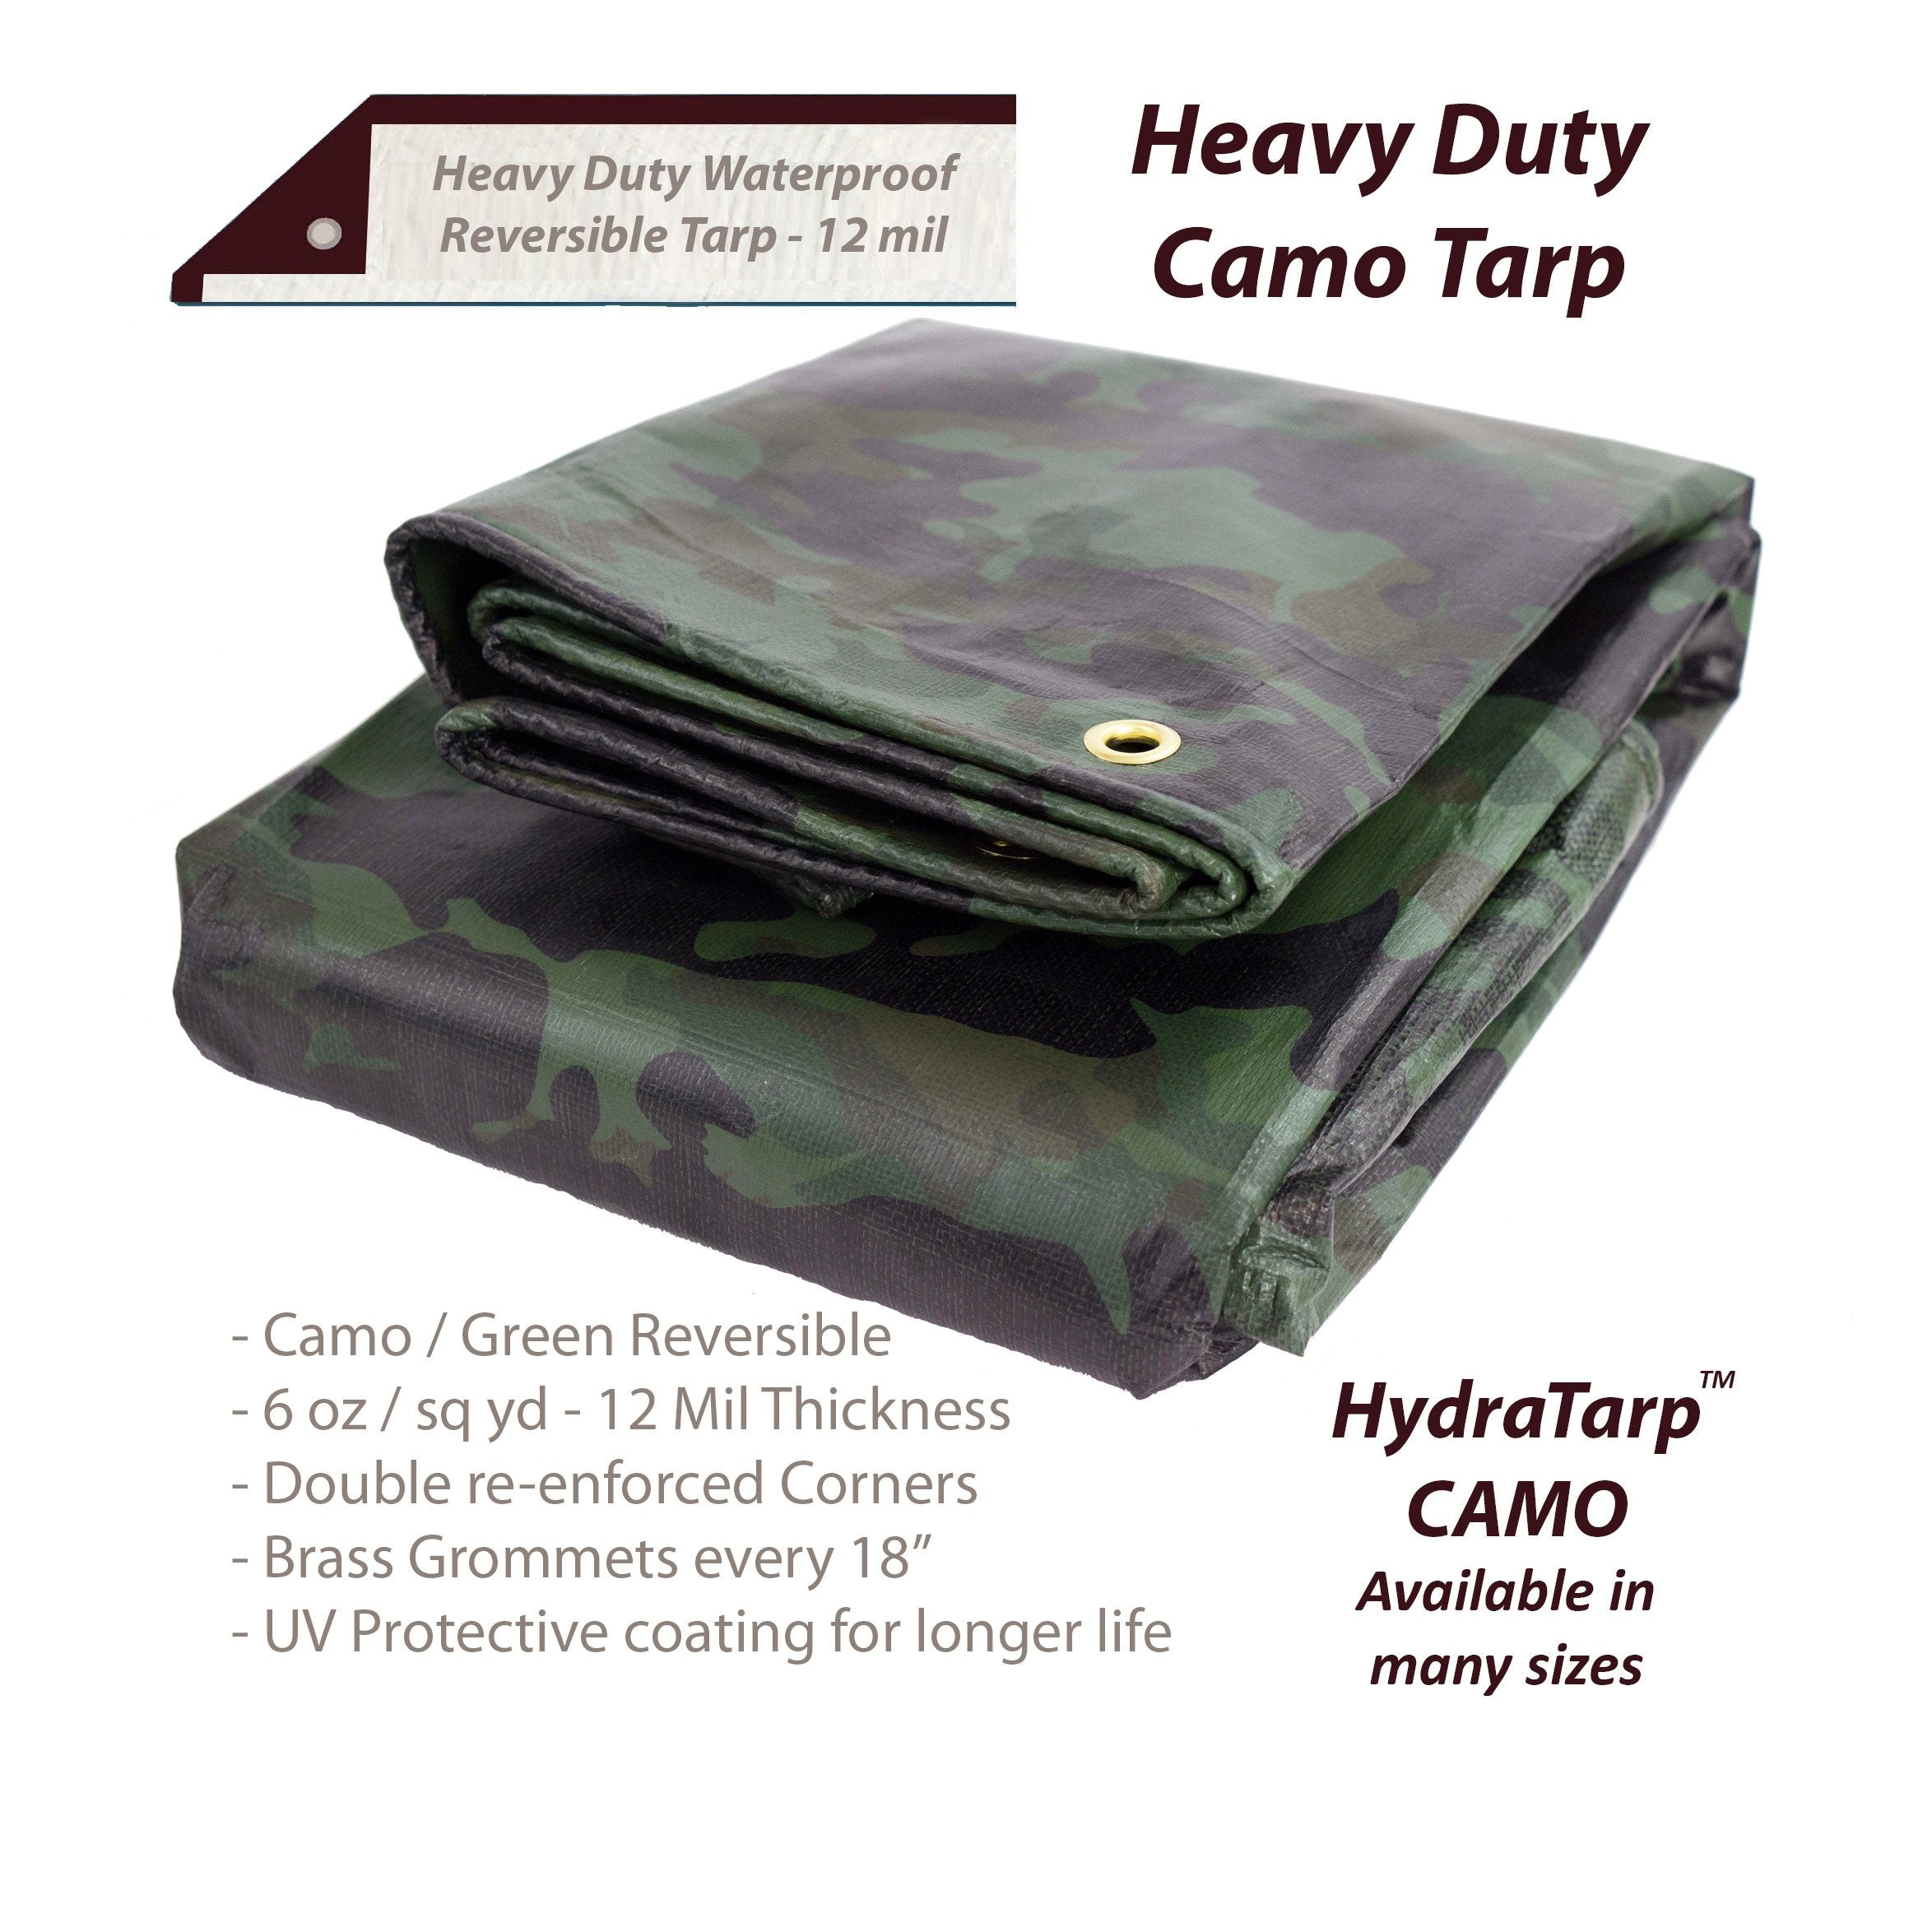 Heavy Duty Waterproof Camo Tarp – HydraBarrier